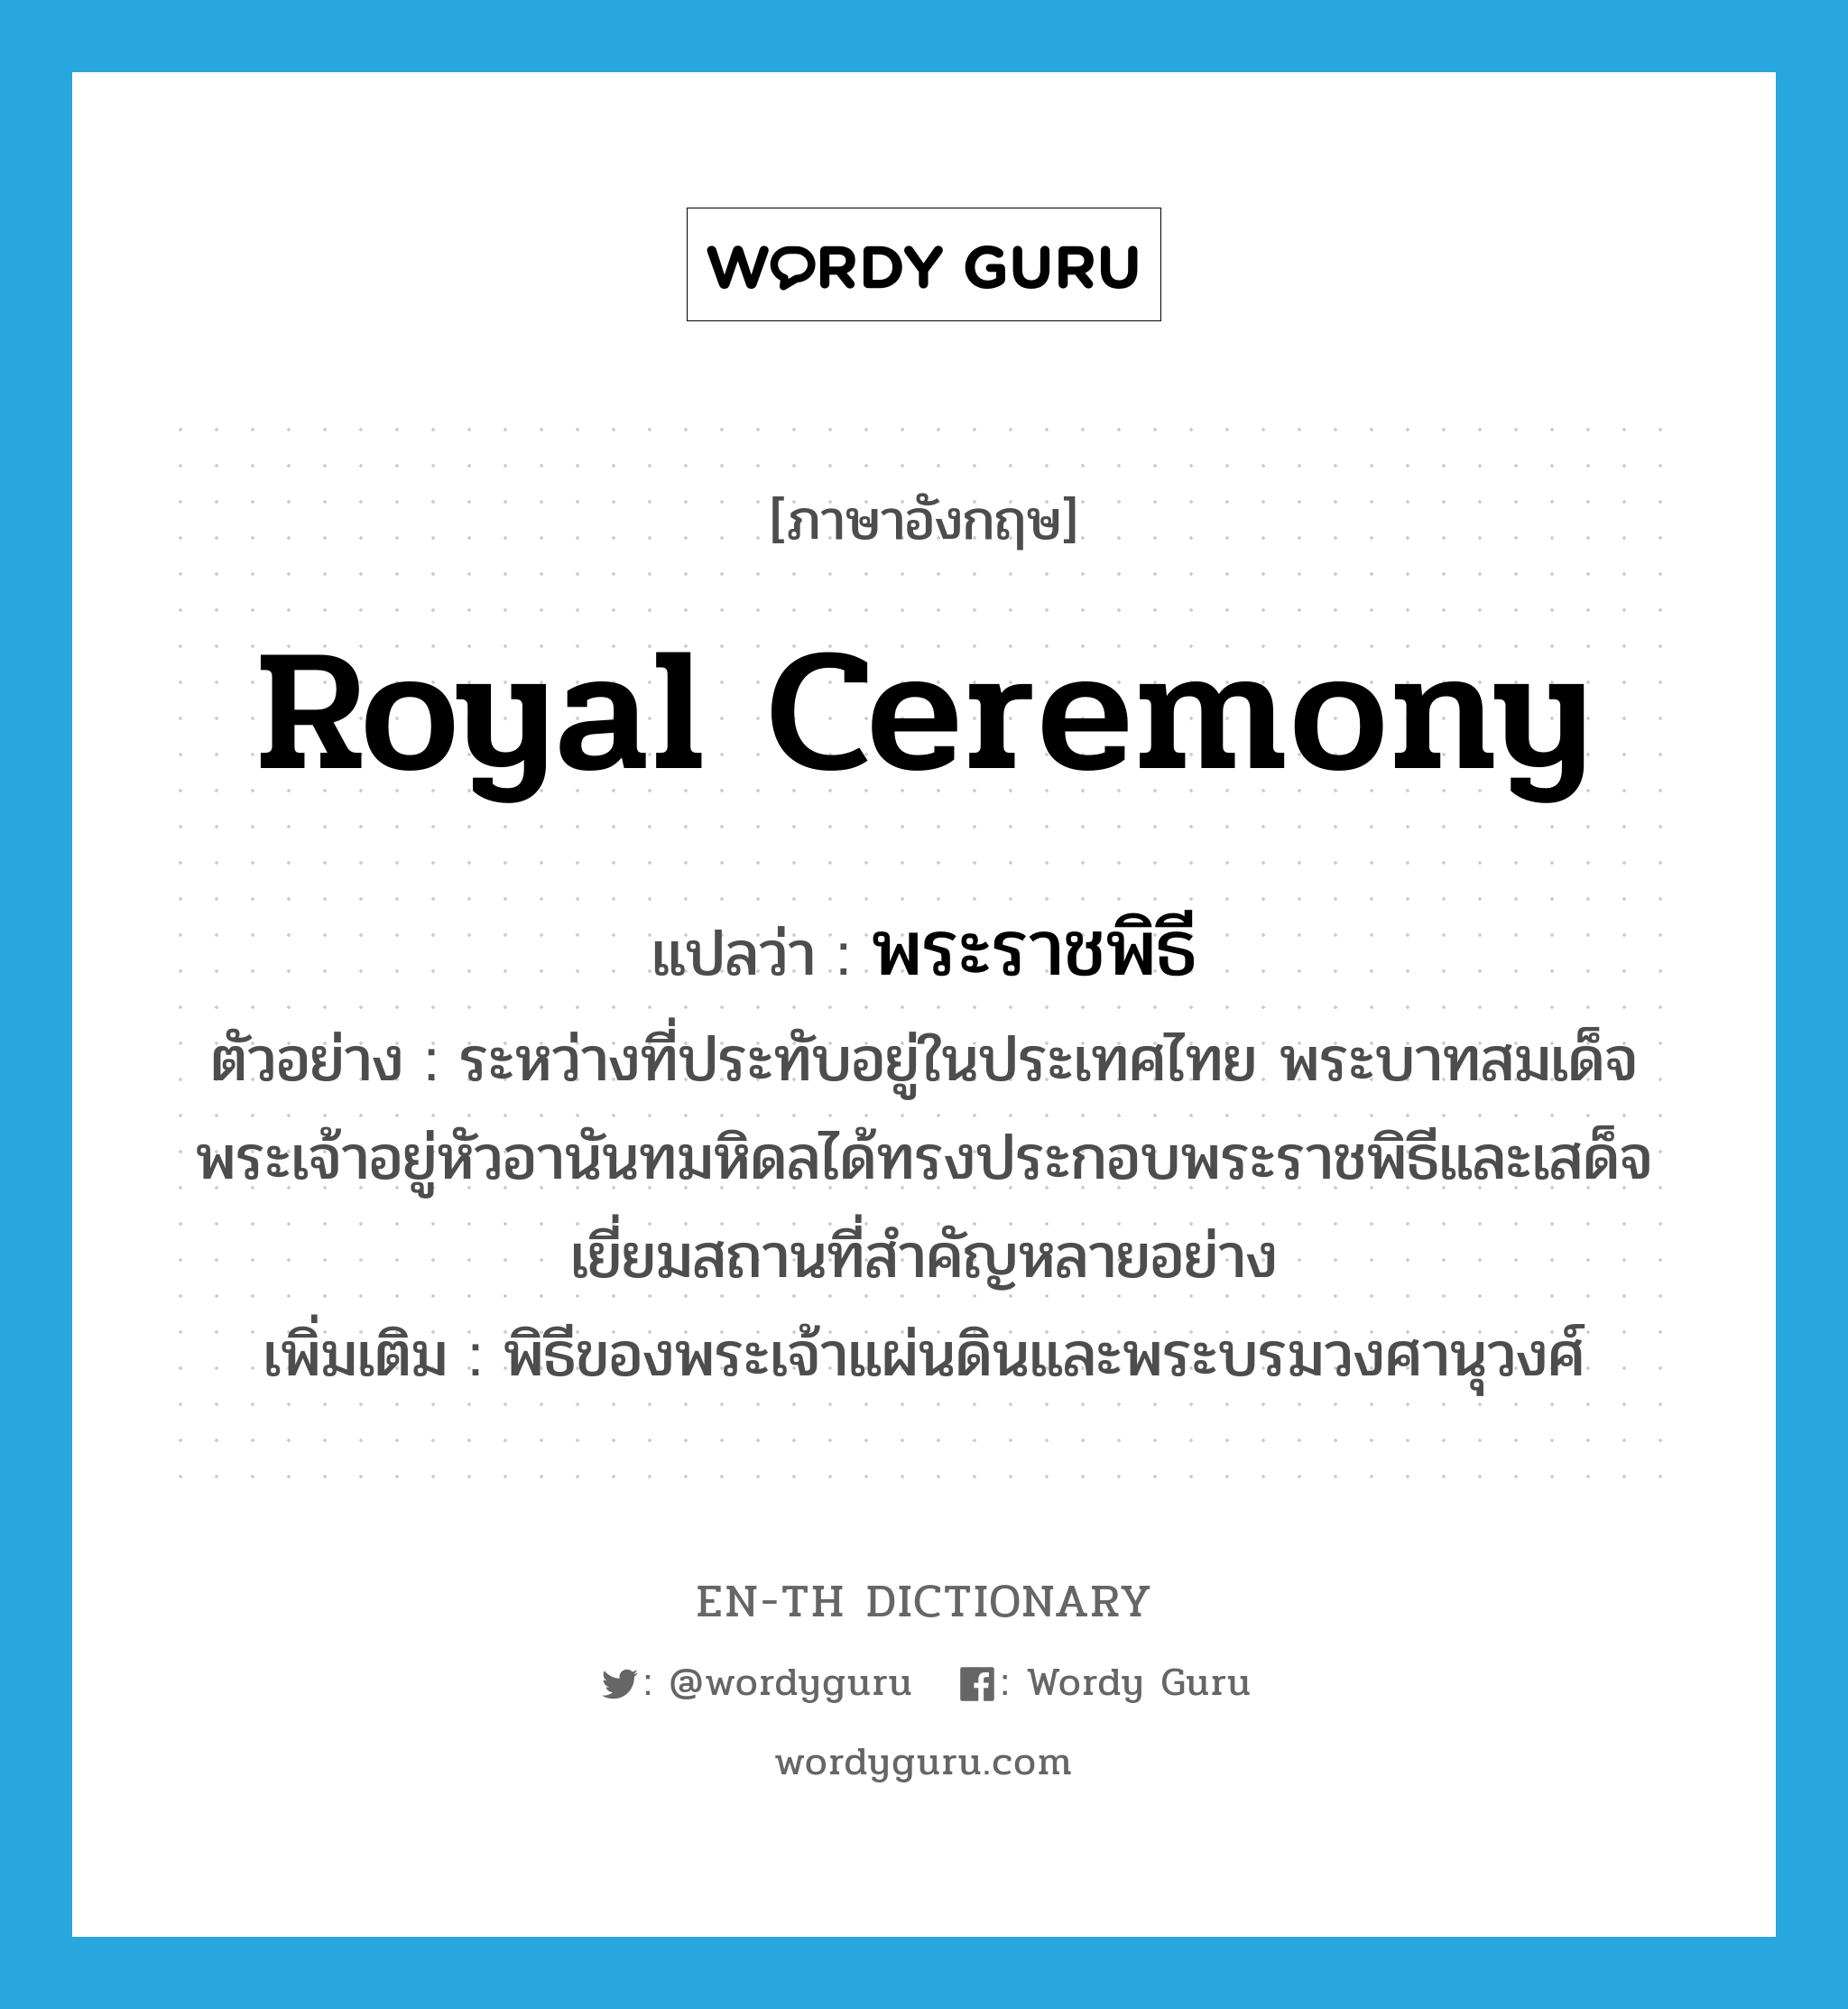 royal ceremony แปลว่า?, คำศัพท์ภาษาอังกฤษ royal ceremony แปลว่า พระราชพิธี ประเภท N ตัวอย่าง ระหว่างที่ประทับอยู่ในประเทศไทย พระบาทสมเด็จพระเจ้าอยู่หัวอานันทมหิดลได้ทรงประกอบพระราชพิธีและเสด็จเยี่ยมสถานที่สำคัญหลายอย่าง เพิ่มเติม พิธีของพระเจ้าแผ่นดินและพระบรมวงศานุวงศ์ หมวด N